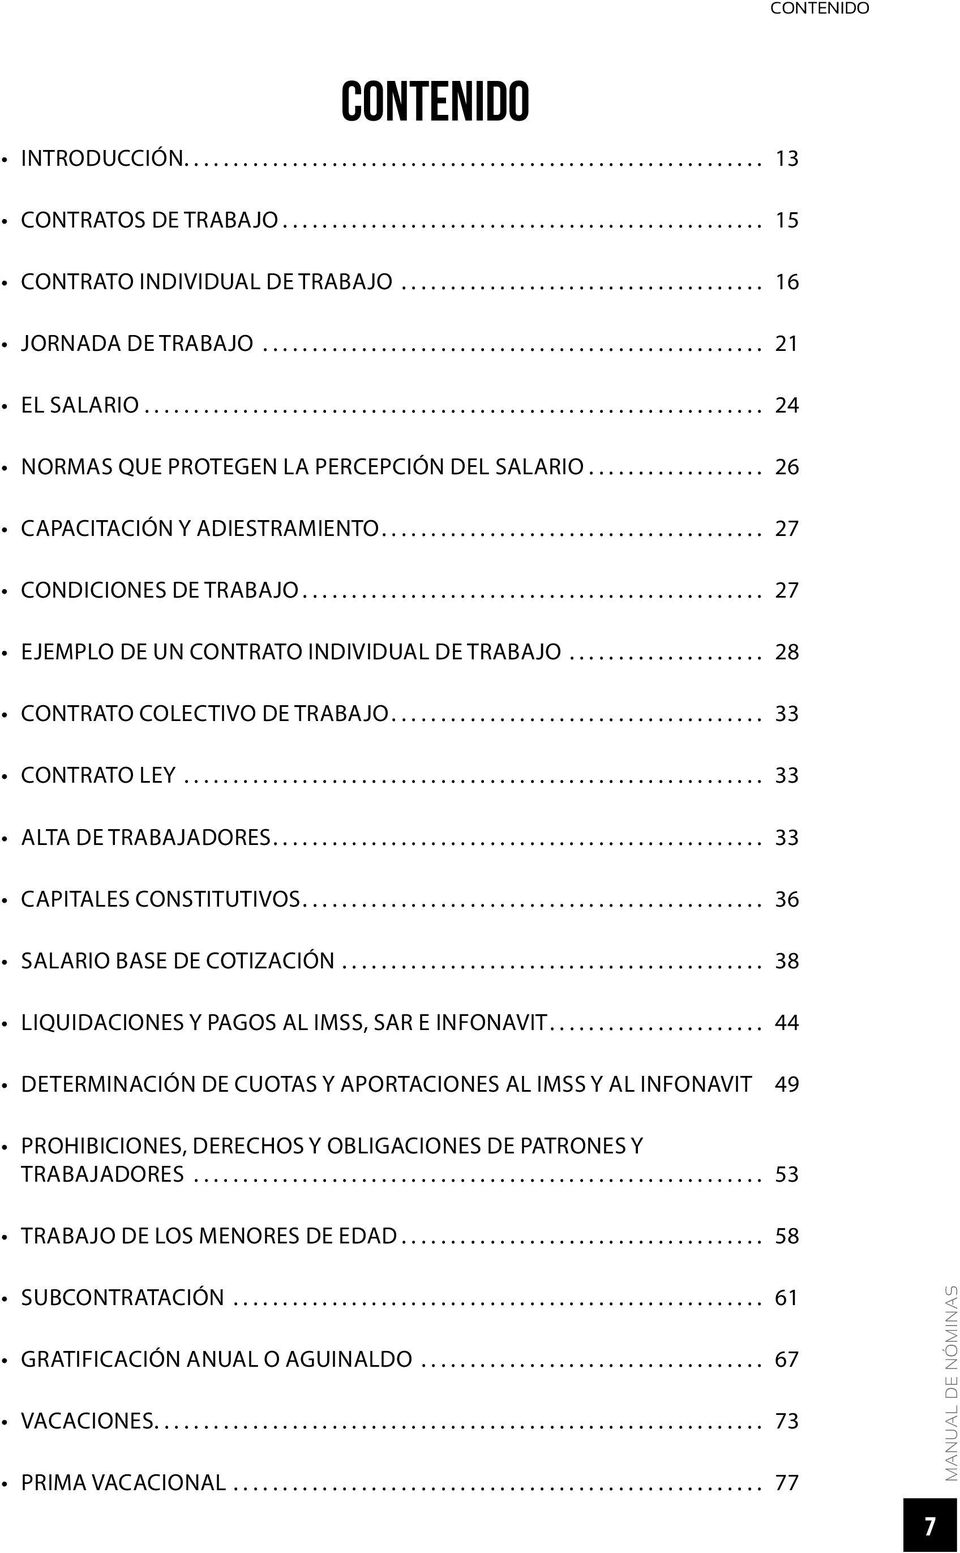 ... 33 CAPITALES CONSTITUTIVOS.... 36 SALARIO BASE DE COTIZACIÓN... 38 LIQUIDACIONES Y PAGOS AL IMSS, SAR E INFONAVIT.